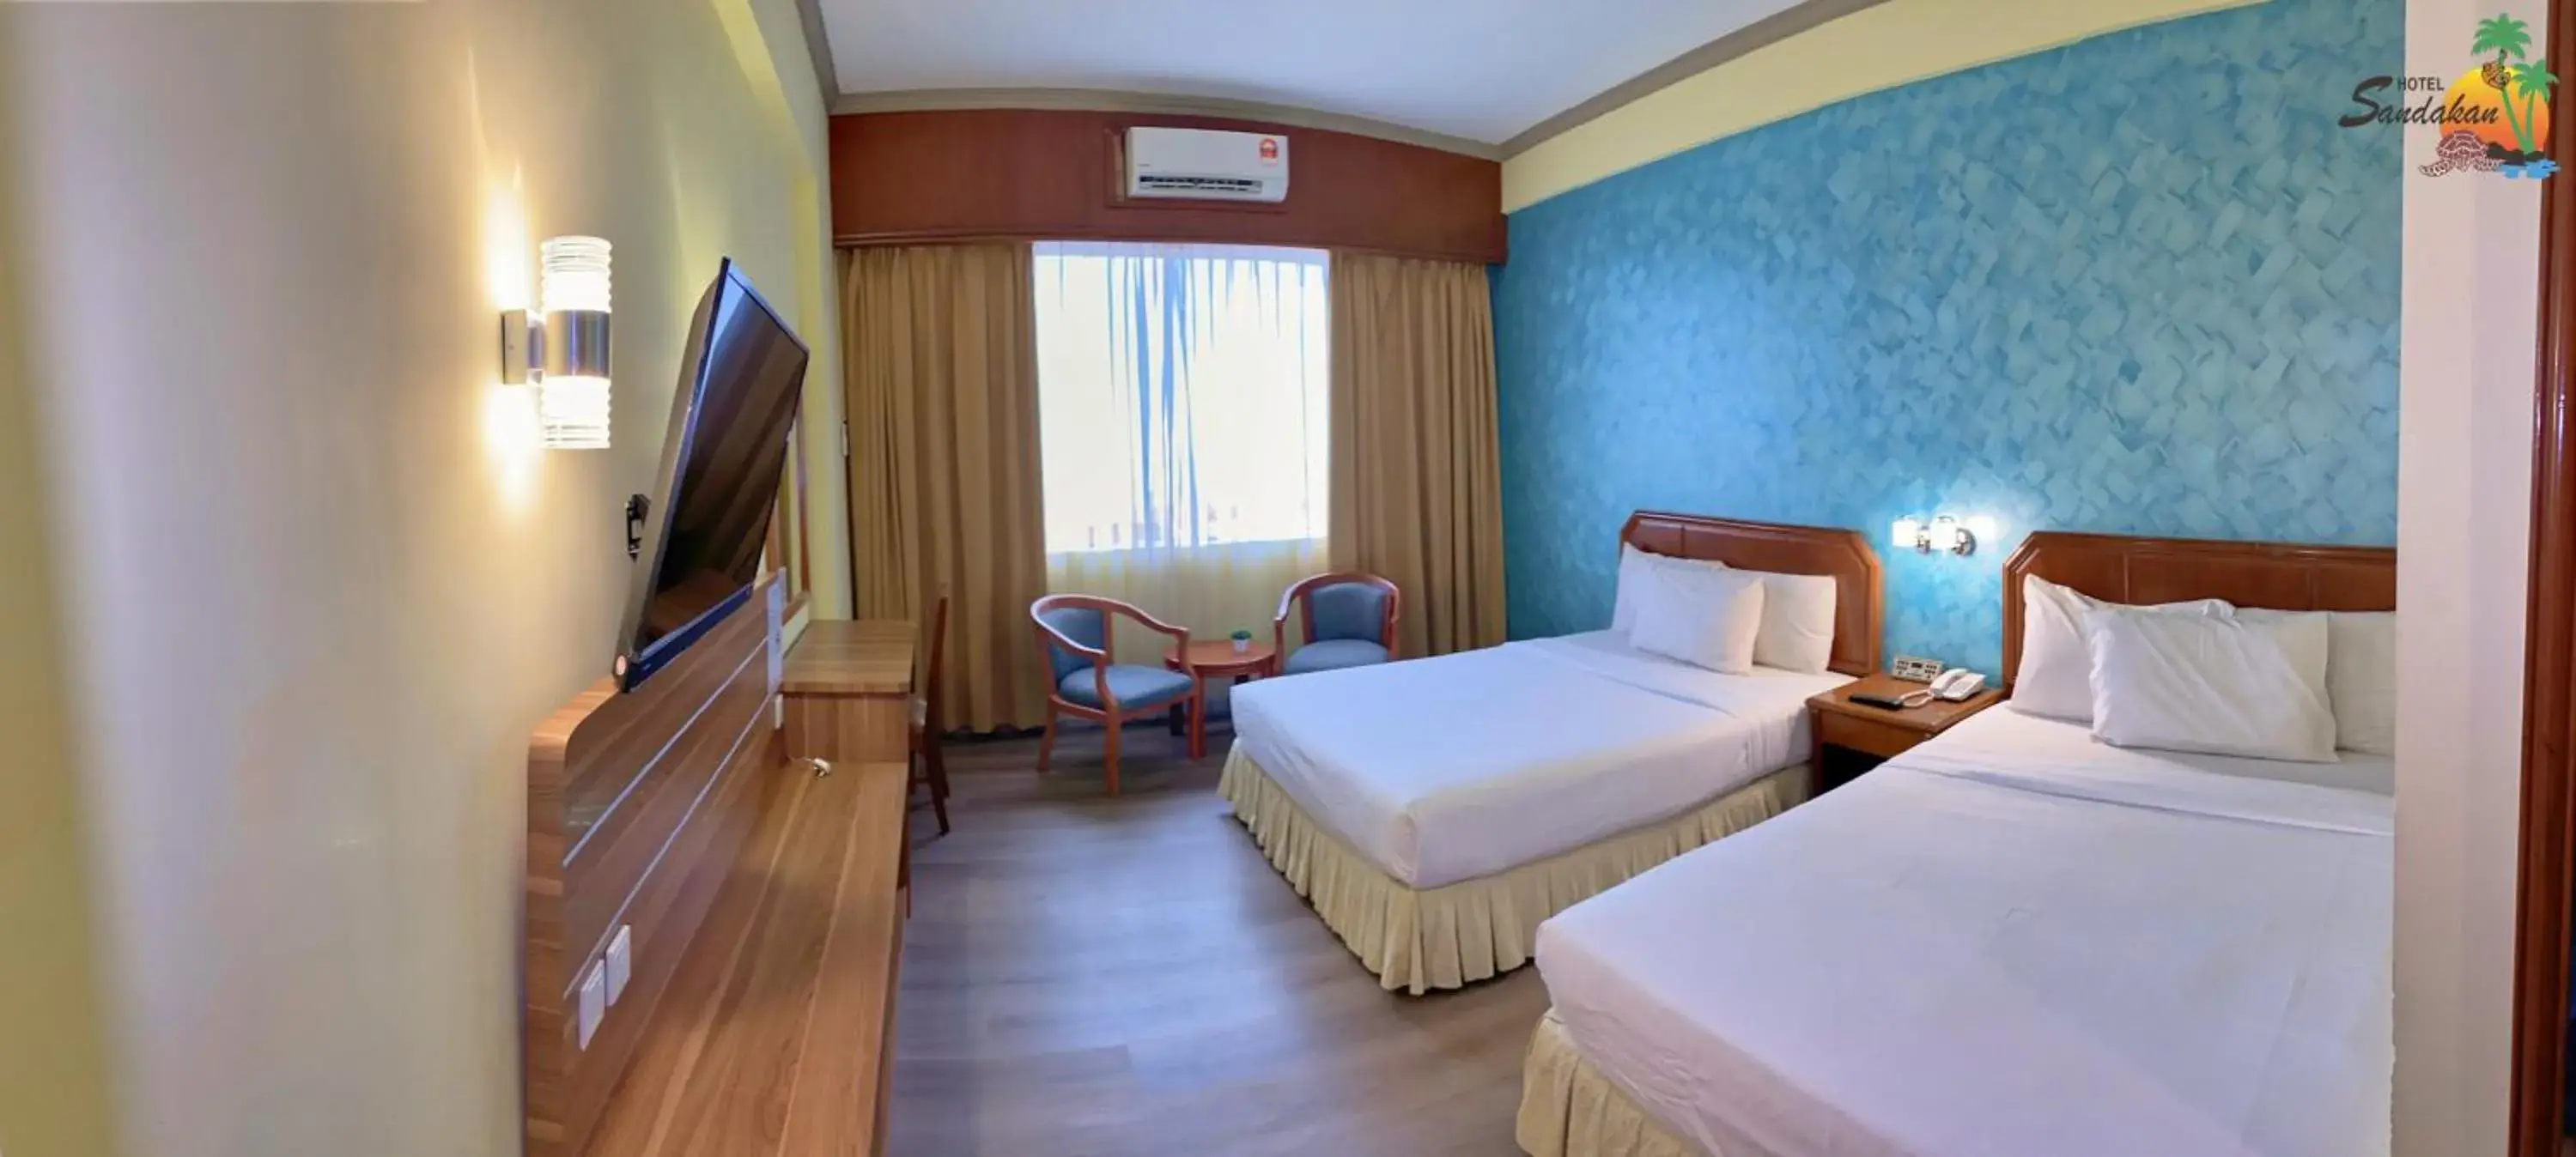 Bed in Hotel Sandakan